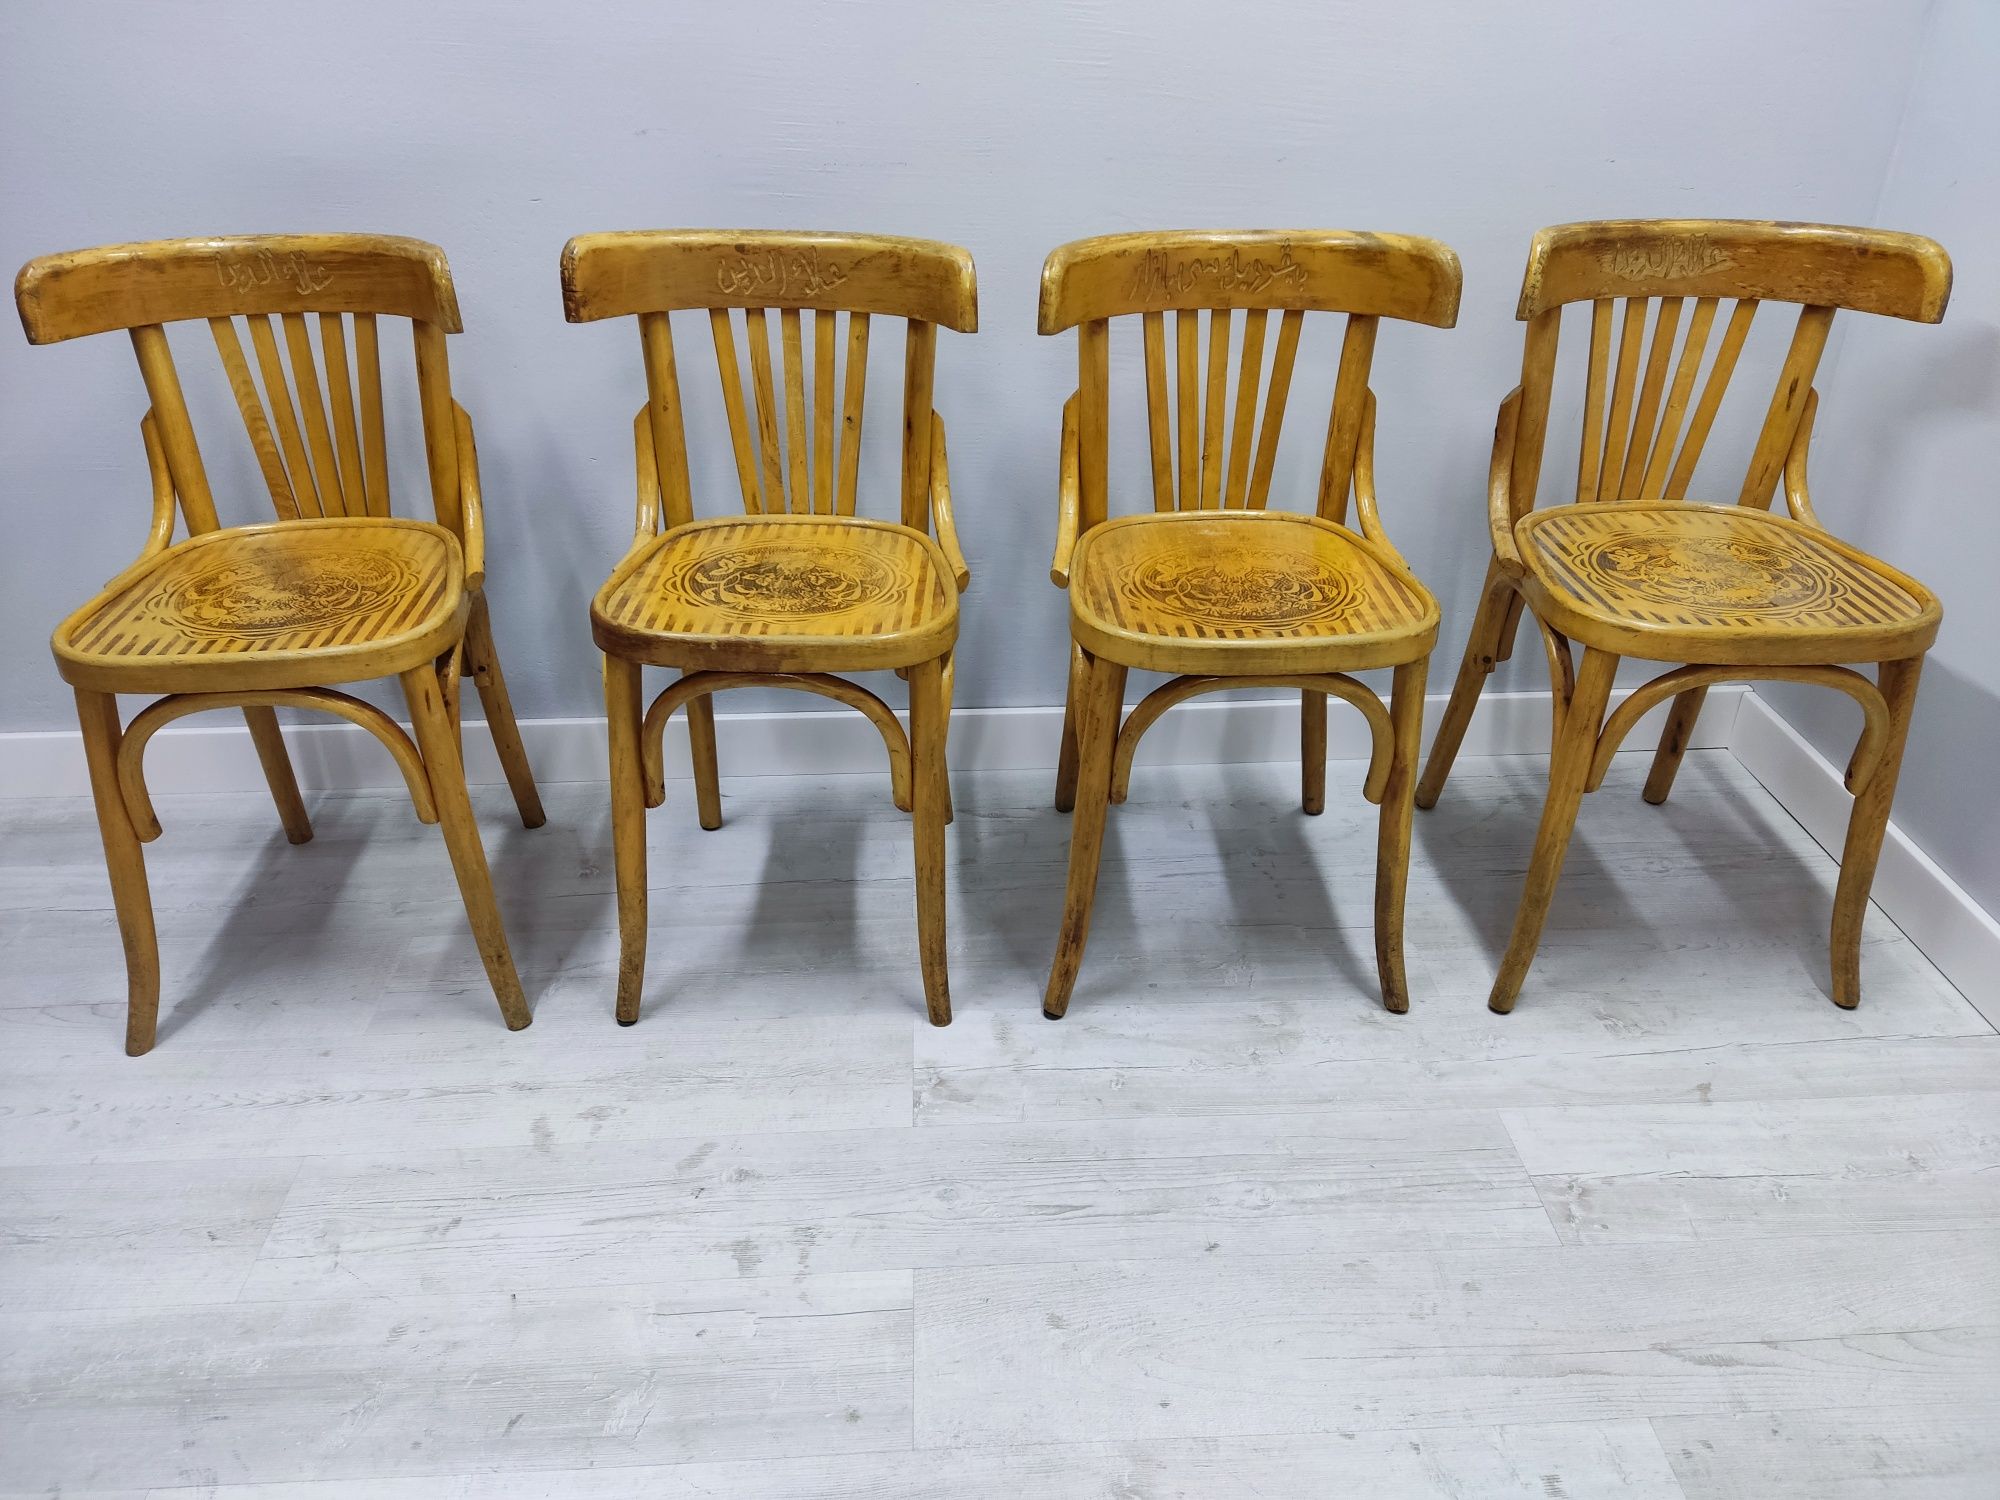 Krzesła Thonet drewniane 12 szt
Meble używane. Noszą ślady użytkowania